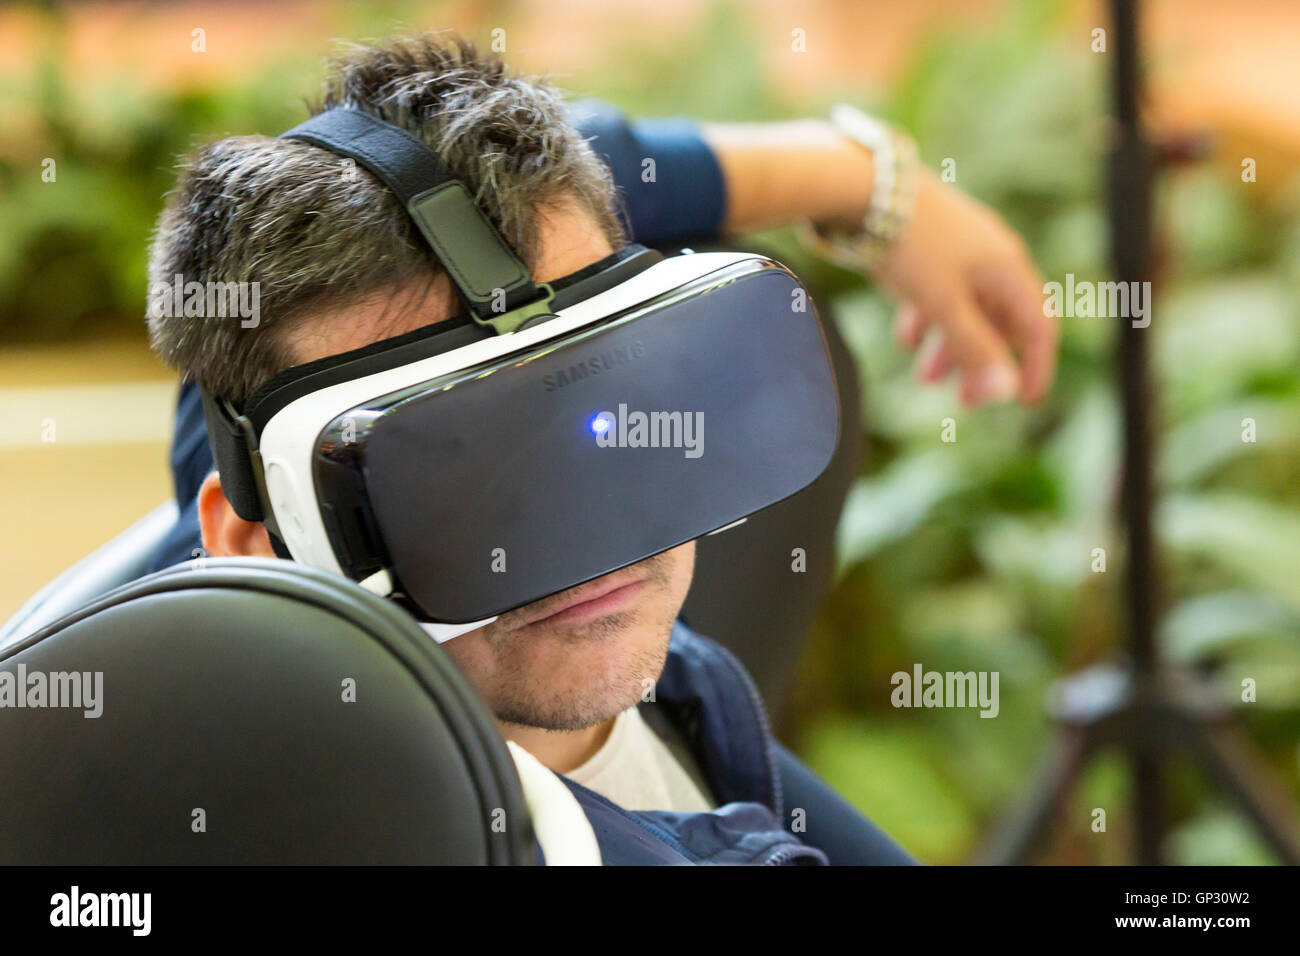 Sofia, Bulgarie - 13 mai 2016 : un homme fait l'expérience de réalité virtuelle (RV) un casque (lunettes) rig sur sa tête pendant un e Banque D'Images